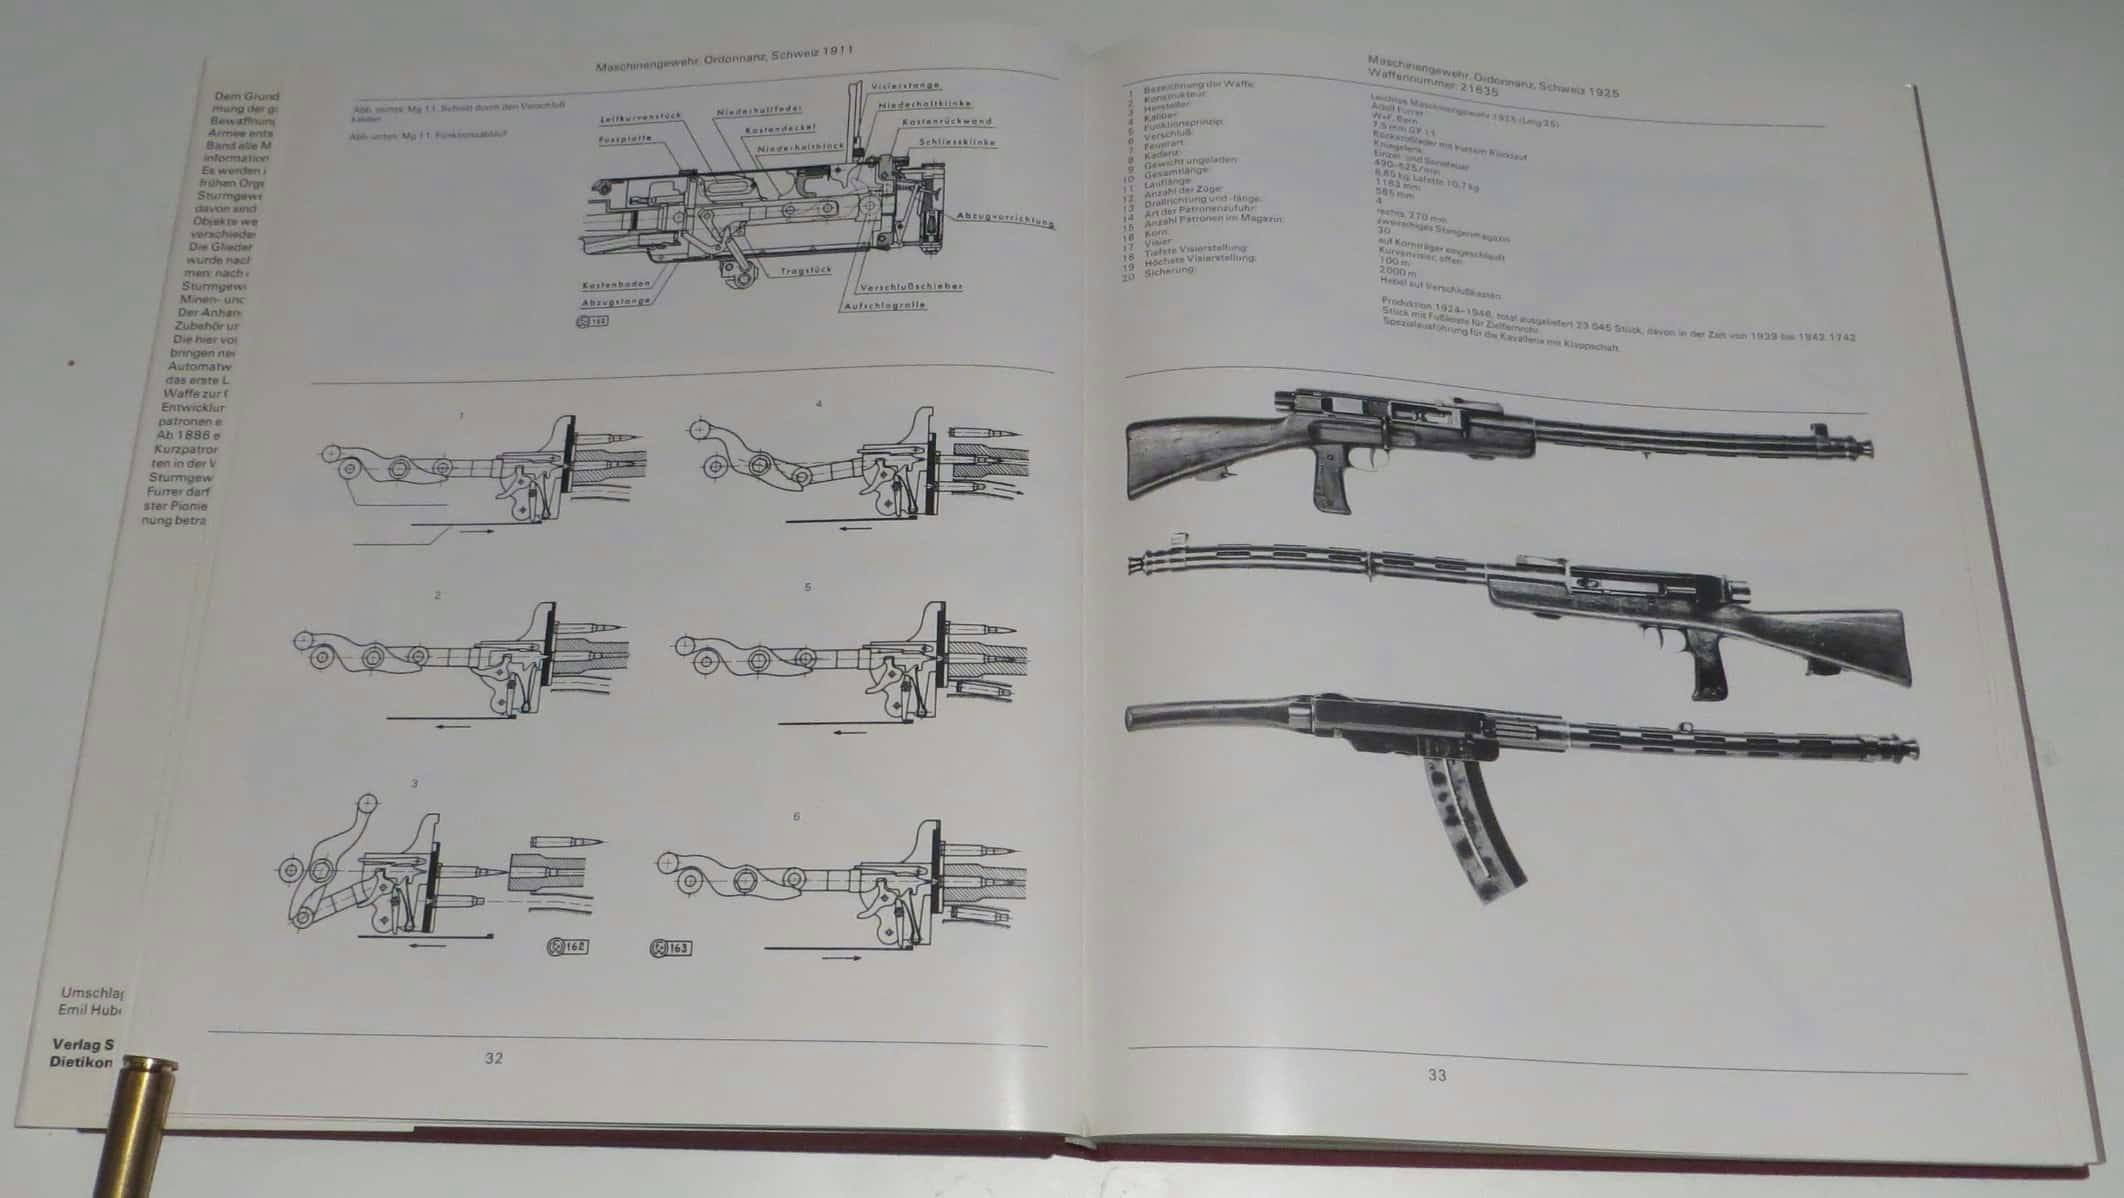 Links: Verschlussquerschnitt und Funktionsprinzip des Maschinengewehr 1911. Rechts Das Lmg 25 mit seitlich eingestecktem Magazin.